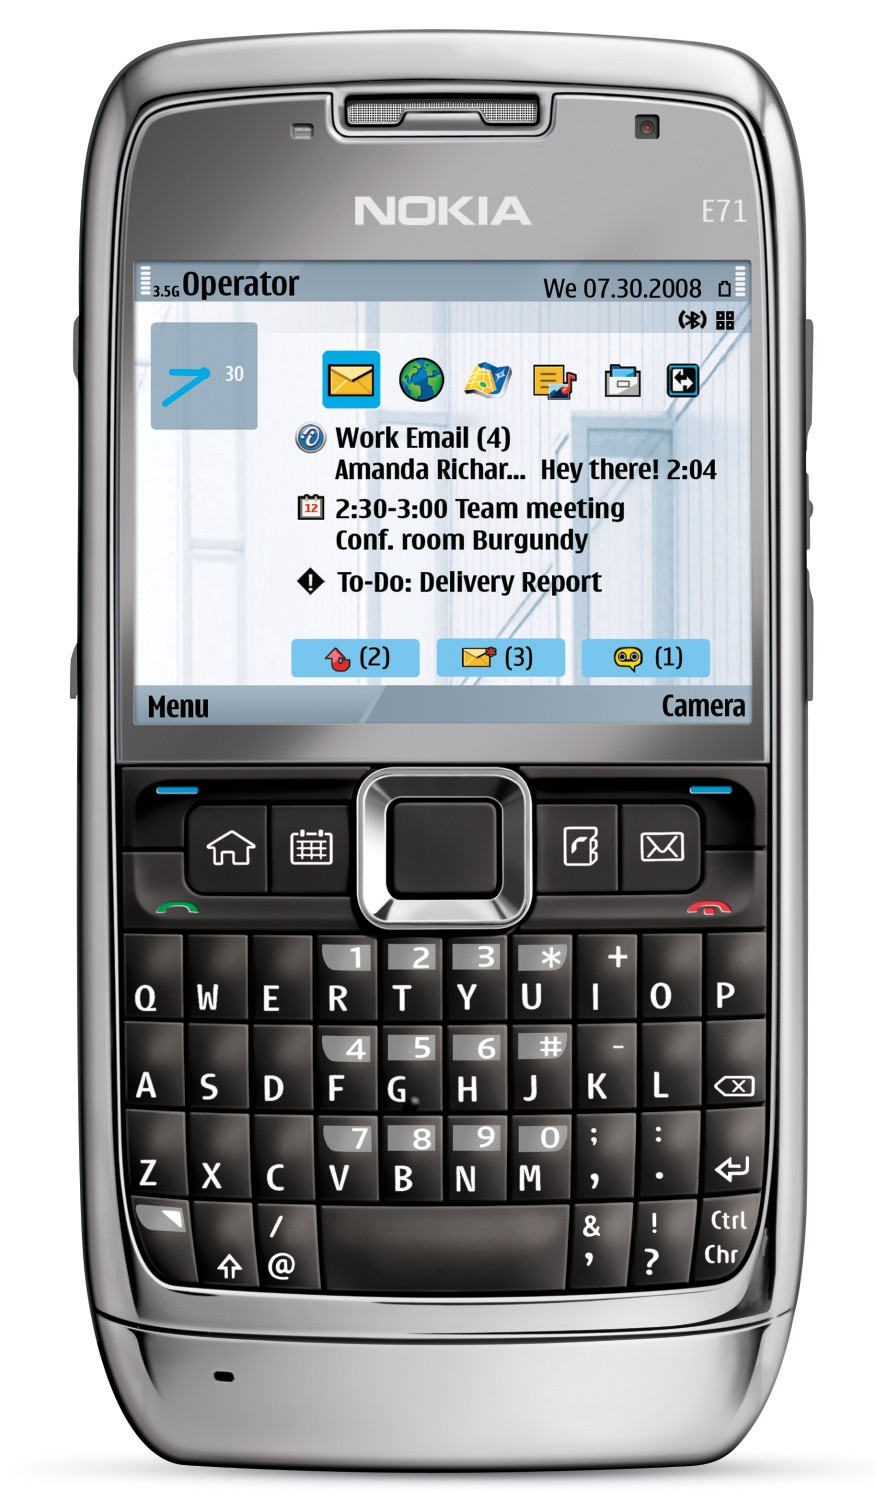 Chia sẻ những hình nền điện thoại nokia 1280 cho iphone đẹp, chất lượng cao